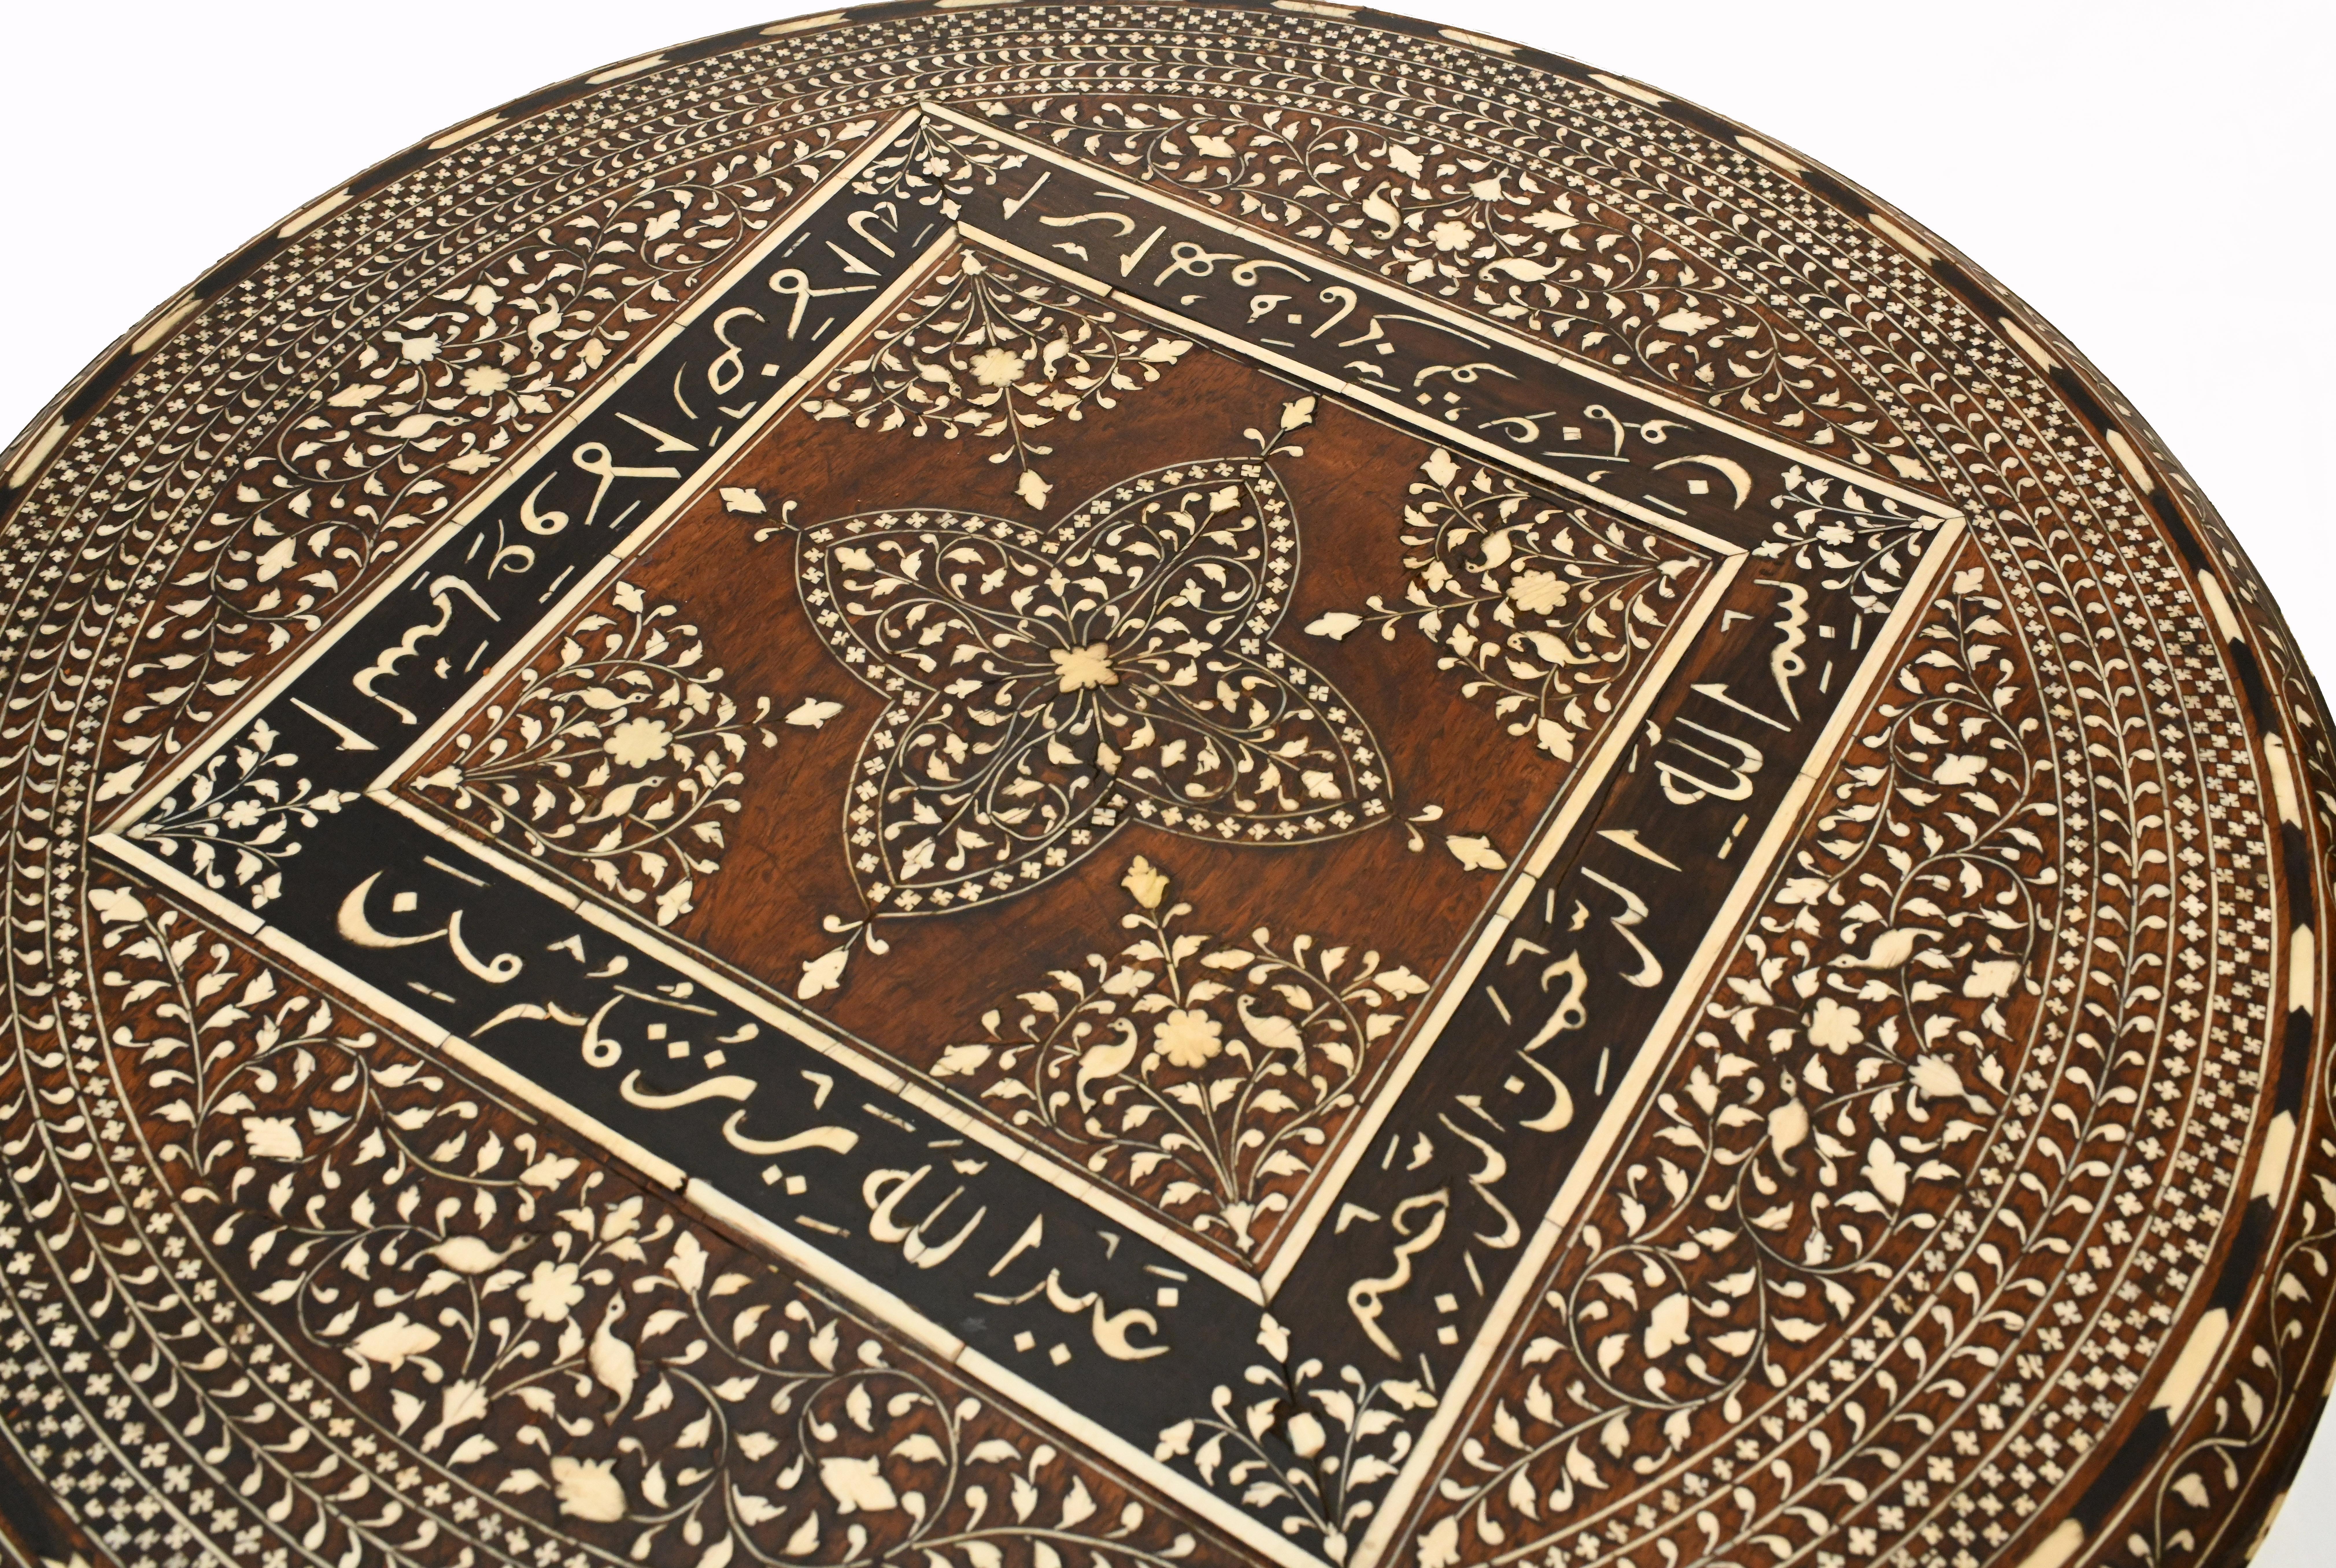 Magnifique table d'appoint islamique datant d'environ 1870.
La qualité de fabrication de cette œuvre d'art est incroyable.
Observez les motifs feuillus complexes et ornés d'incrustations géométriques complexes et de calligraphie arabe.
Superbe